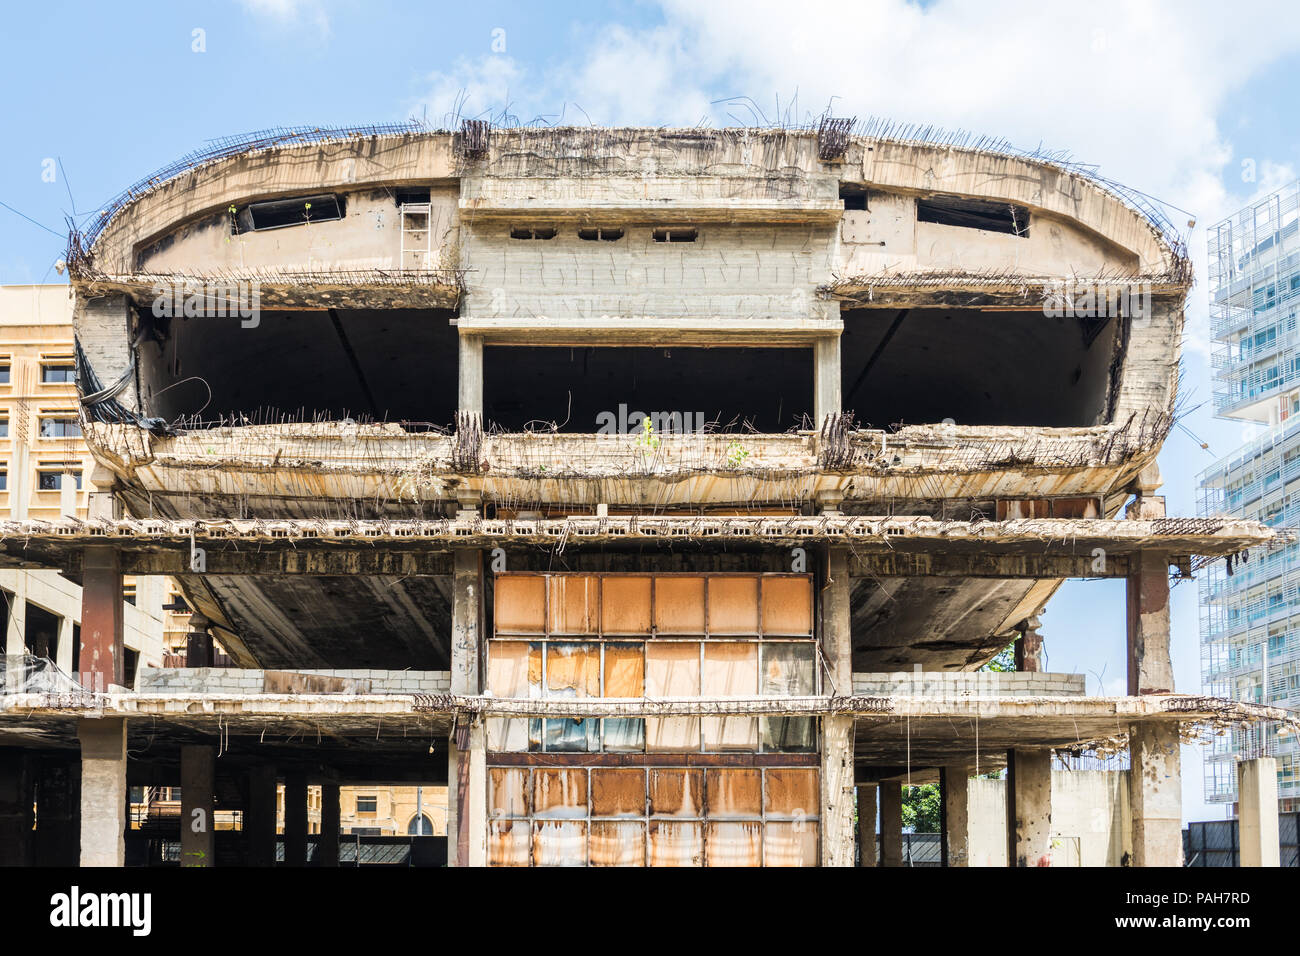 Le dôme en forme d'œuf théâtre Centre-ville ou le 'Egg', cinéma abandonné laissé en ruines après la guerre civile au Liban, Beirut Central District Banque D'Images